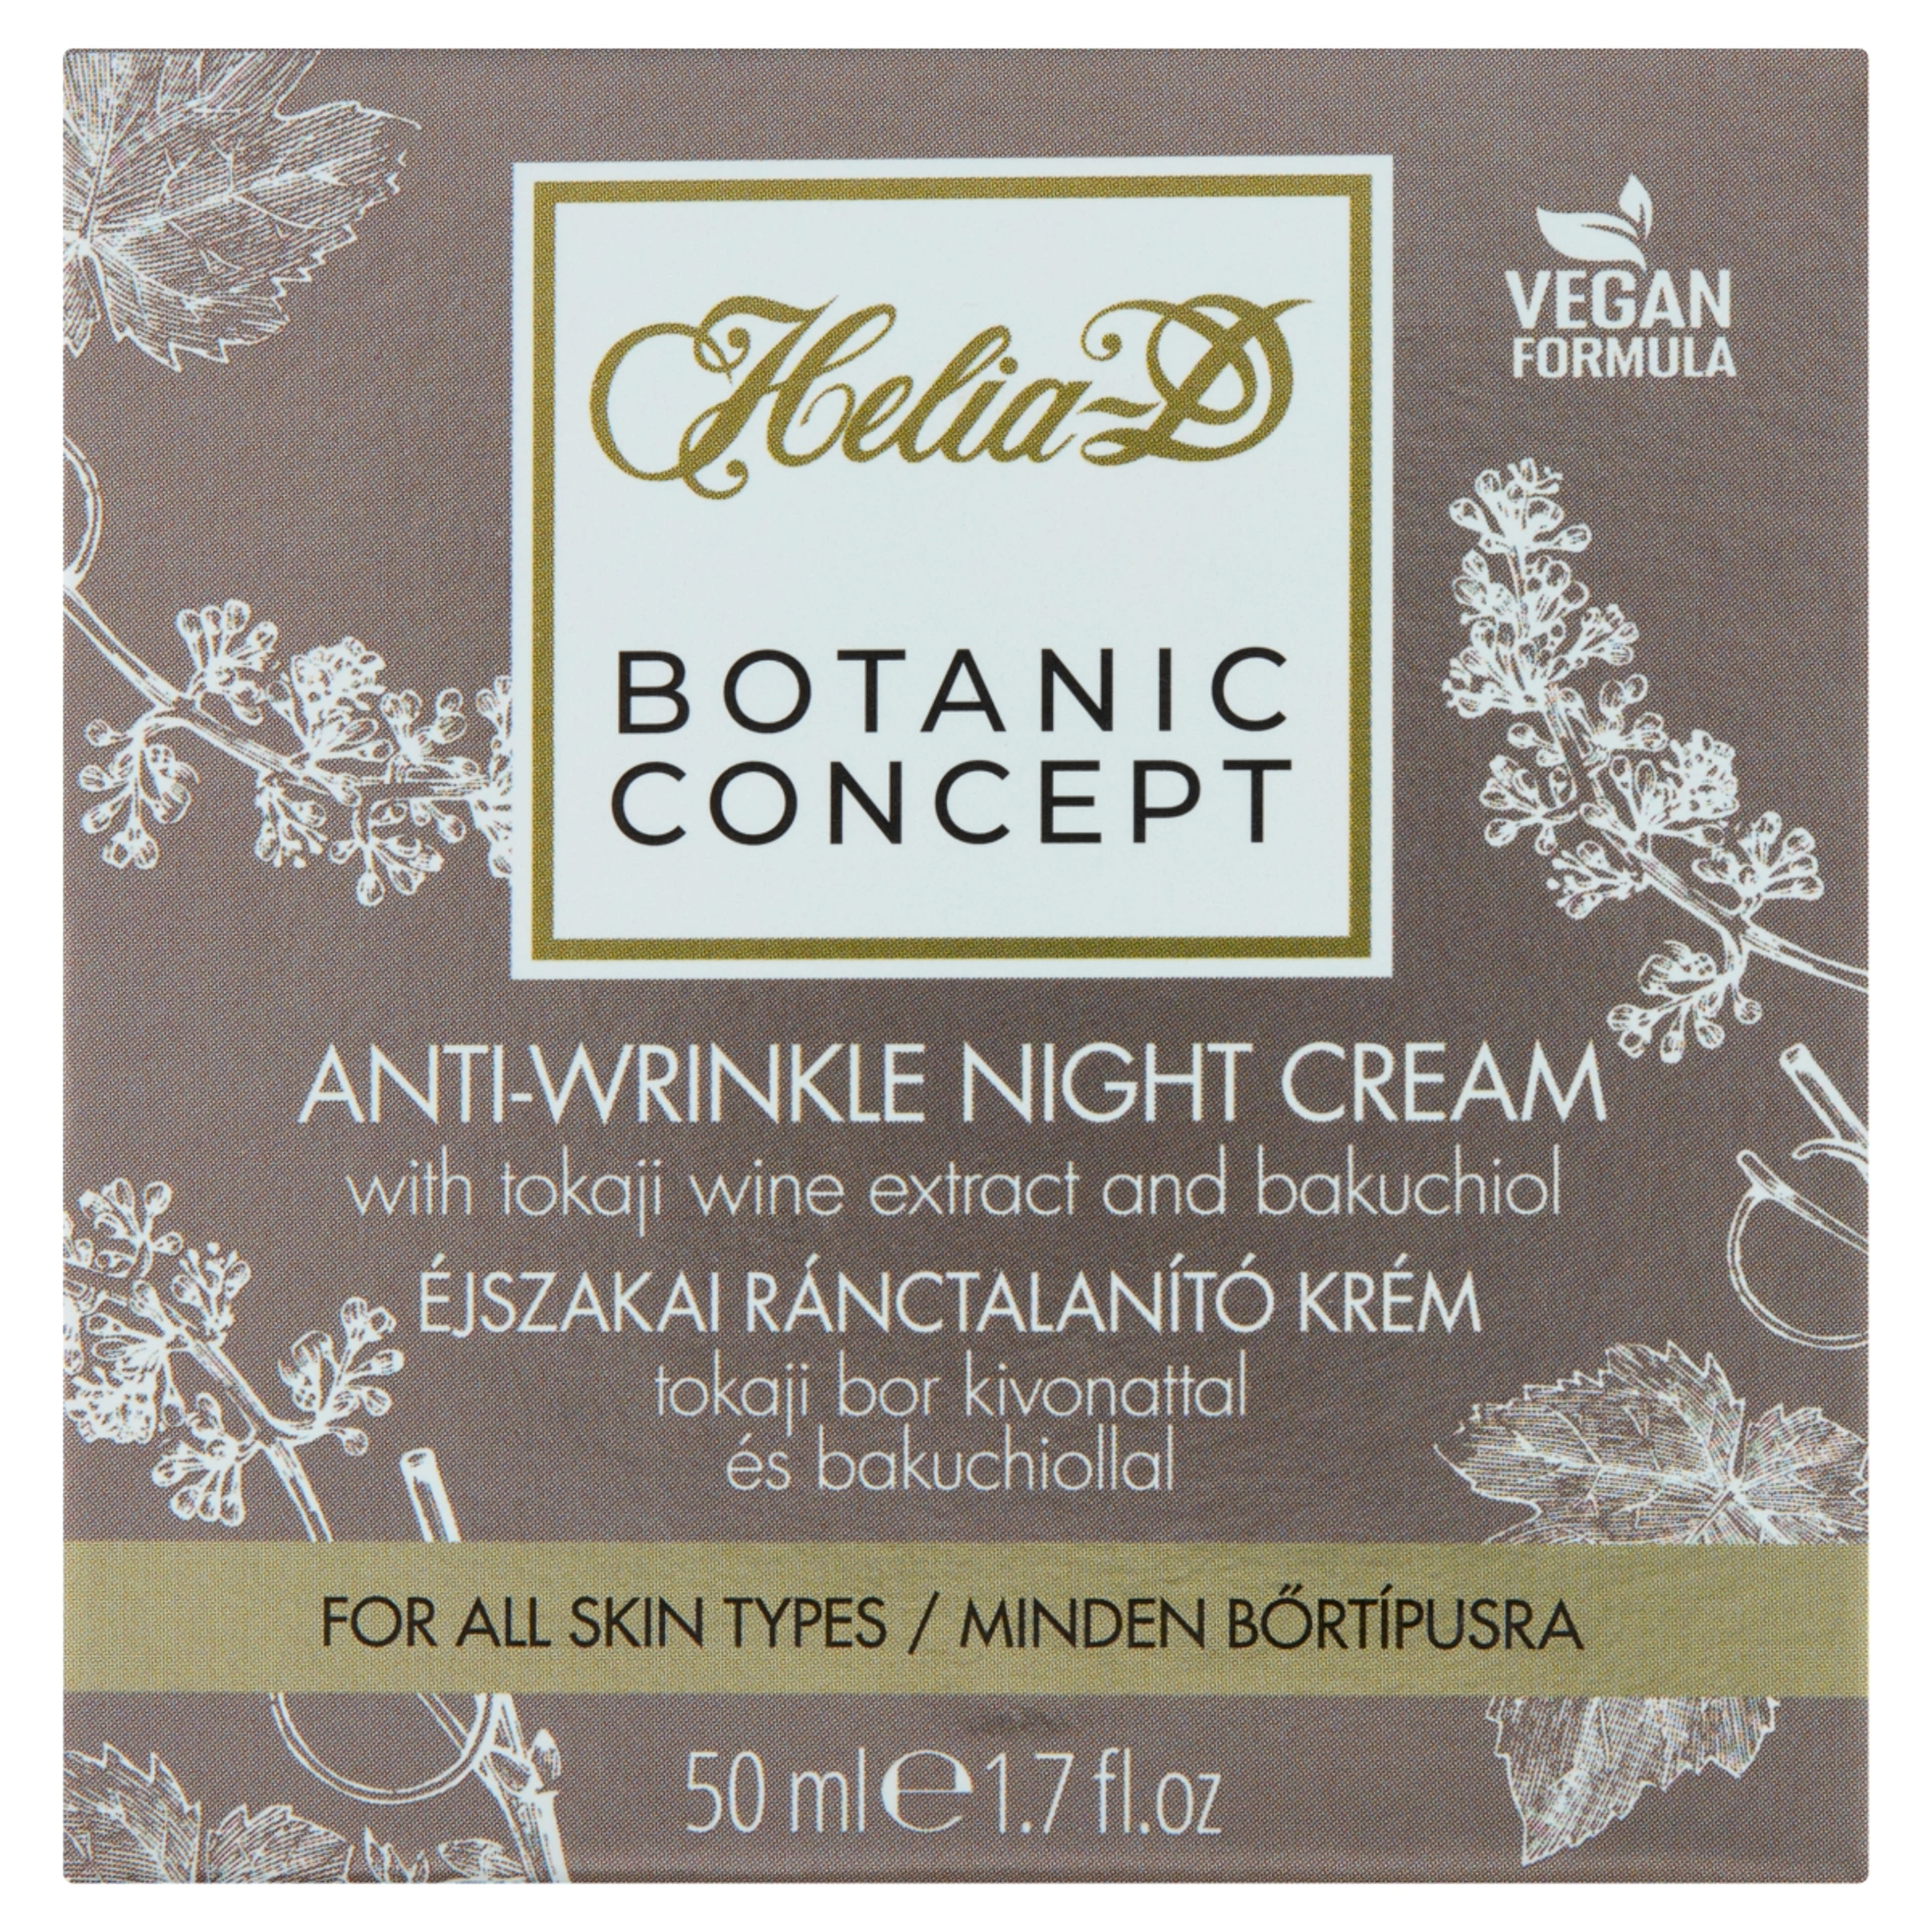 Helia-D Botanic Concept ejszakai ranctalanito krém - 50 ml